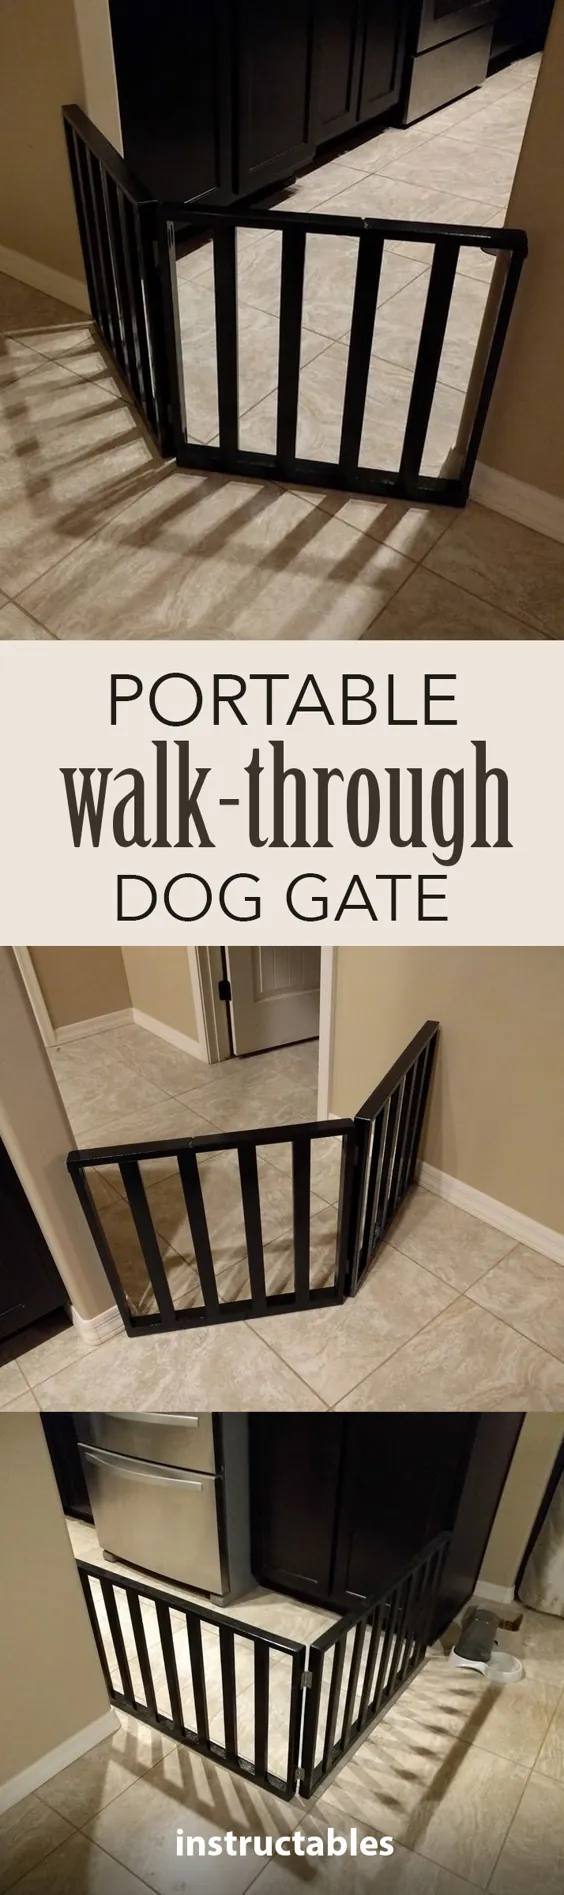 از طریق دروازه سگ قدم بزنید